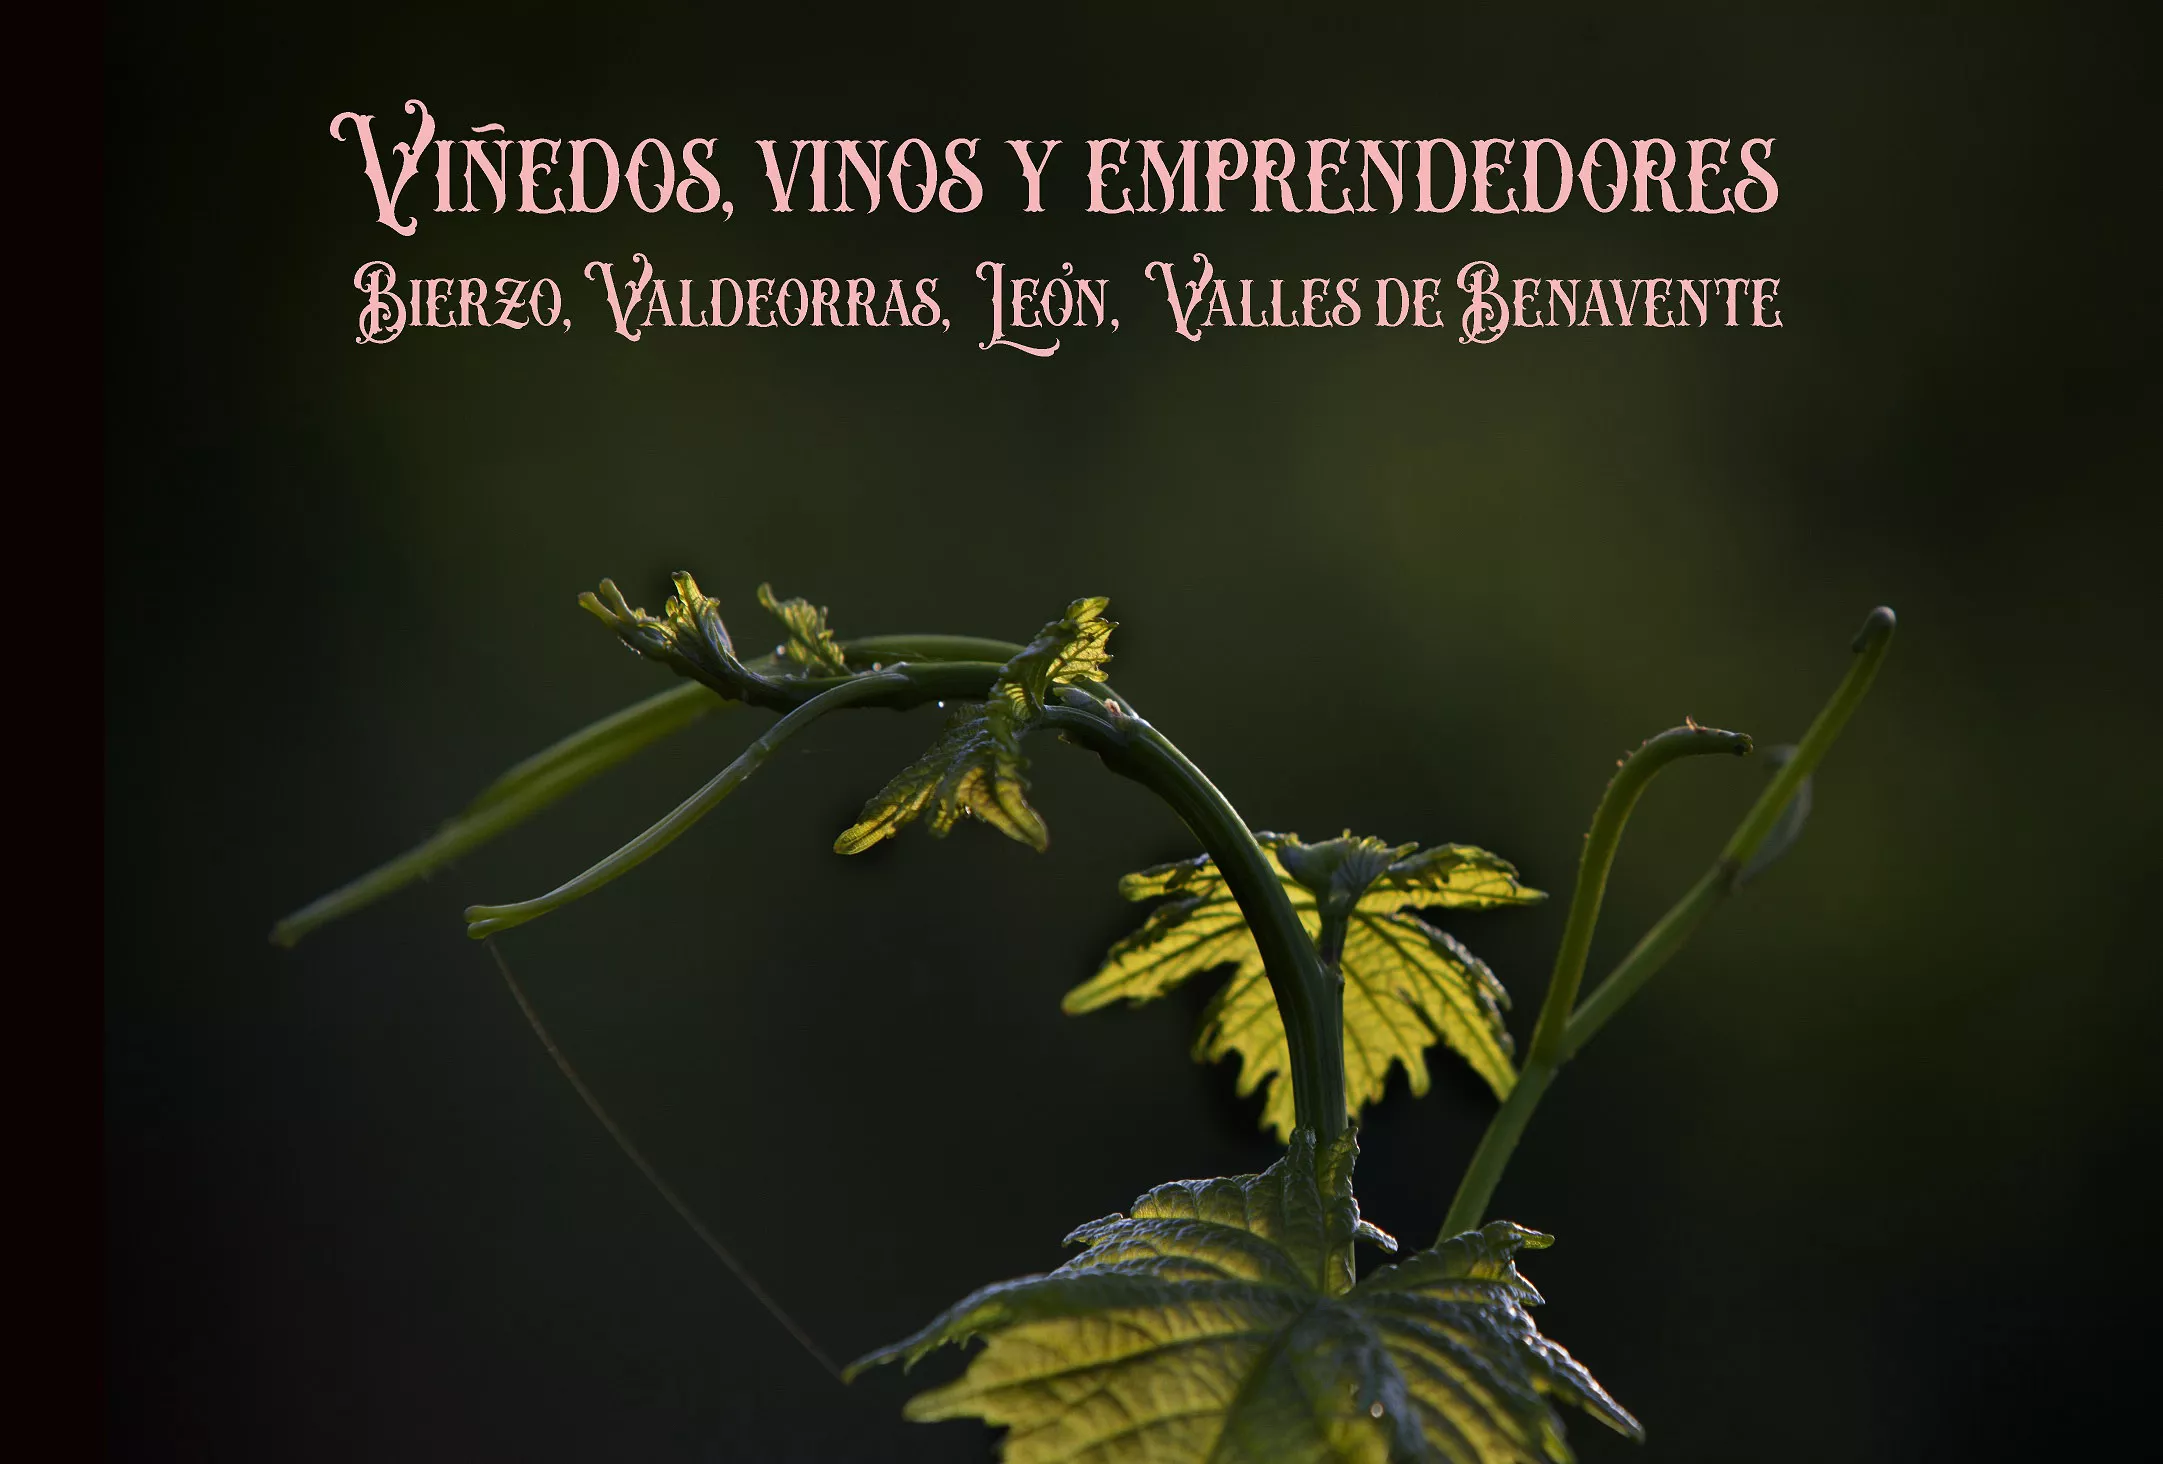 VIÑEDOS Y VINOS. Bierzo, Valdeorras, León, Valles de Benavente